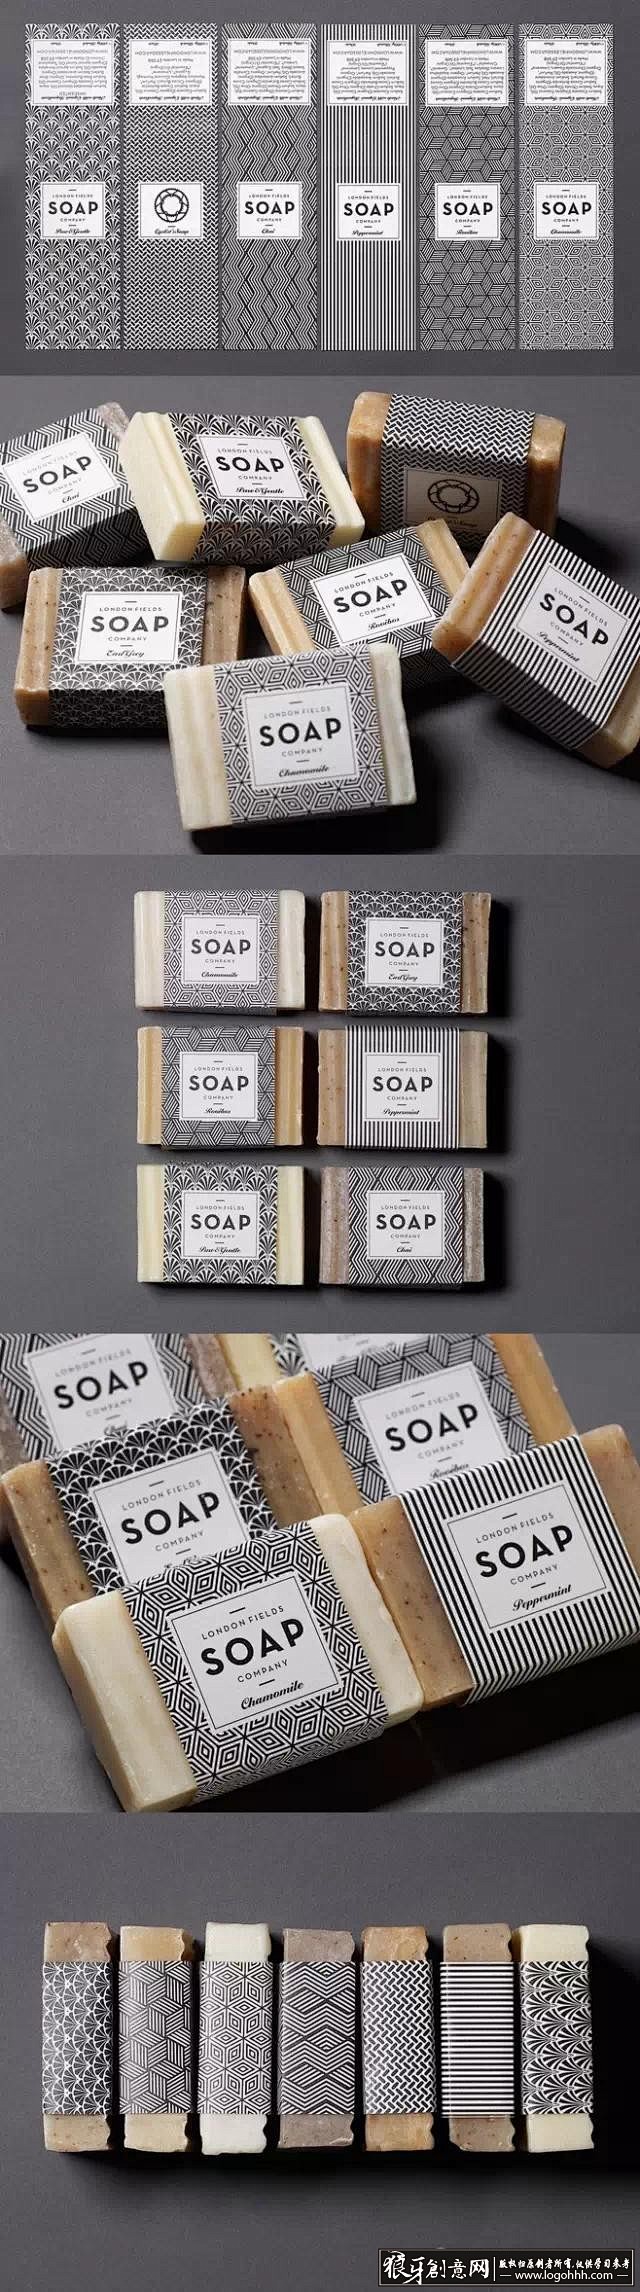 肥皂包装 